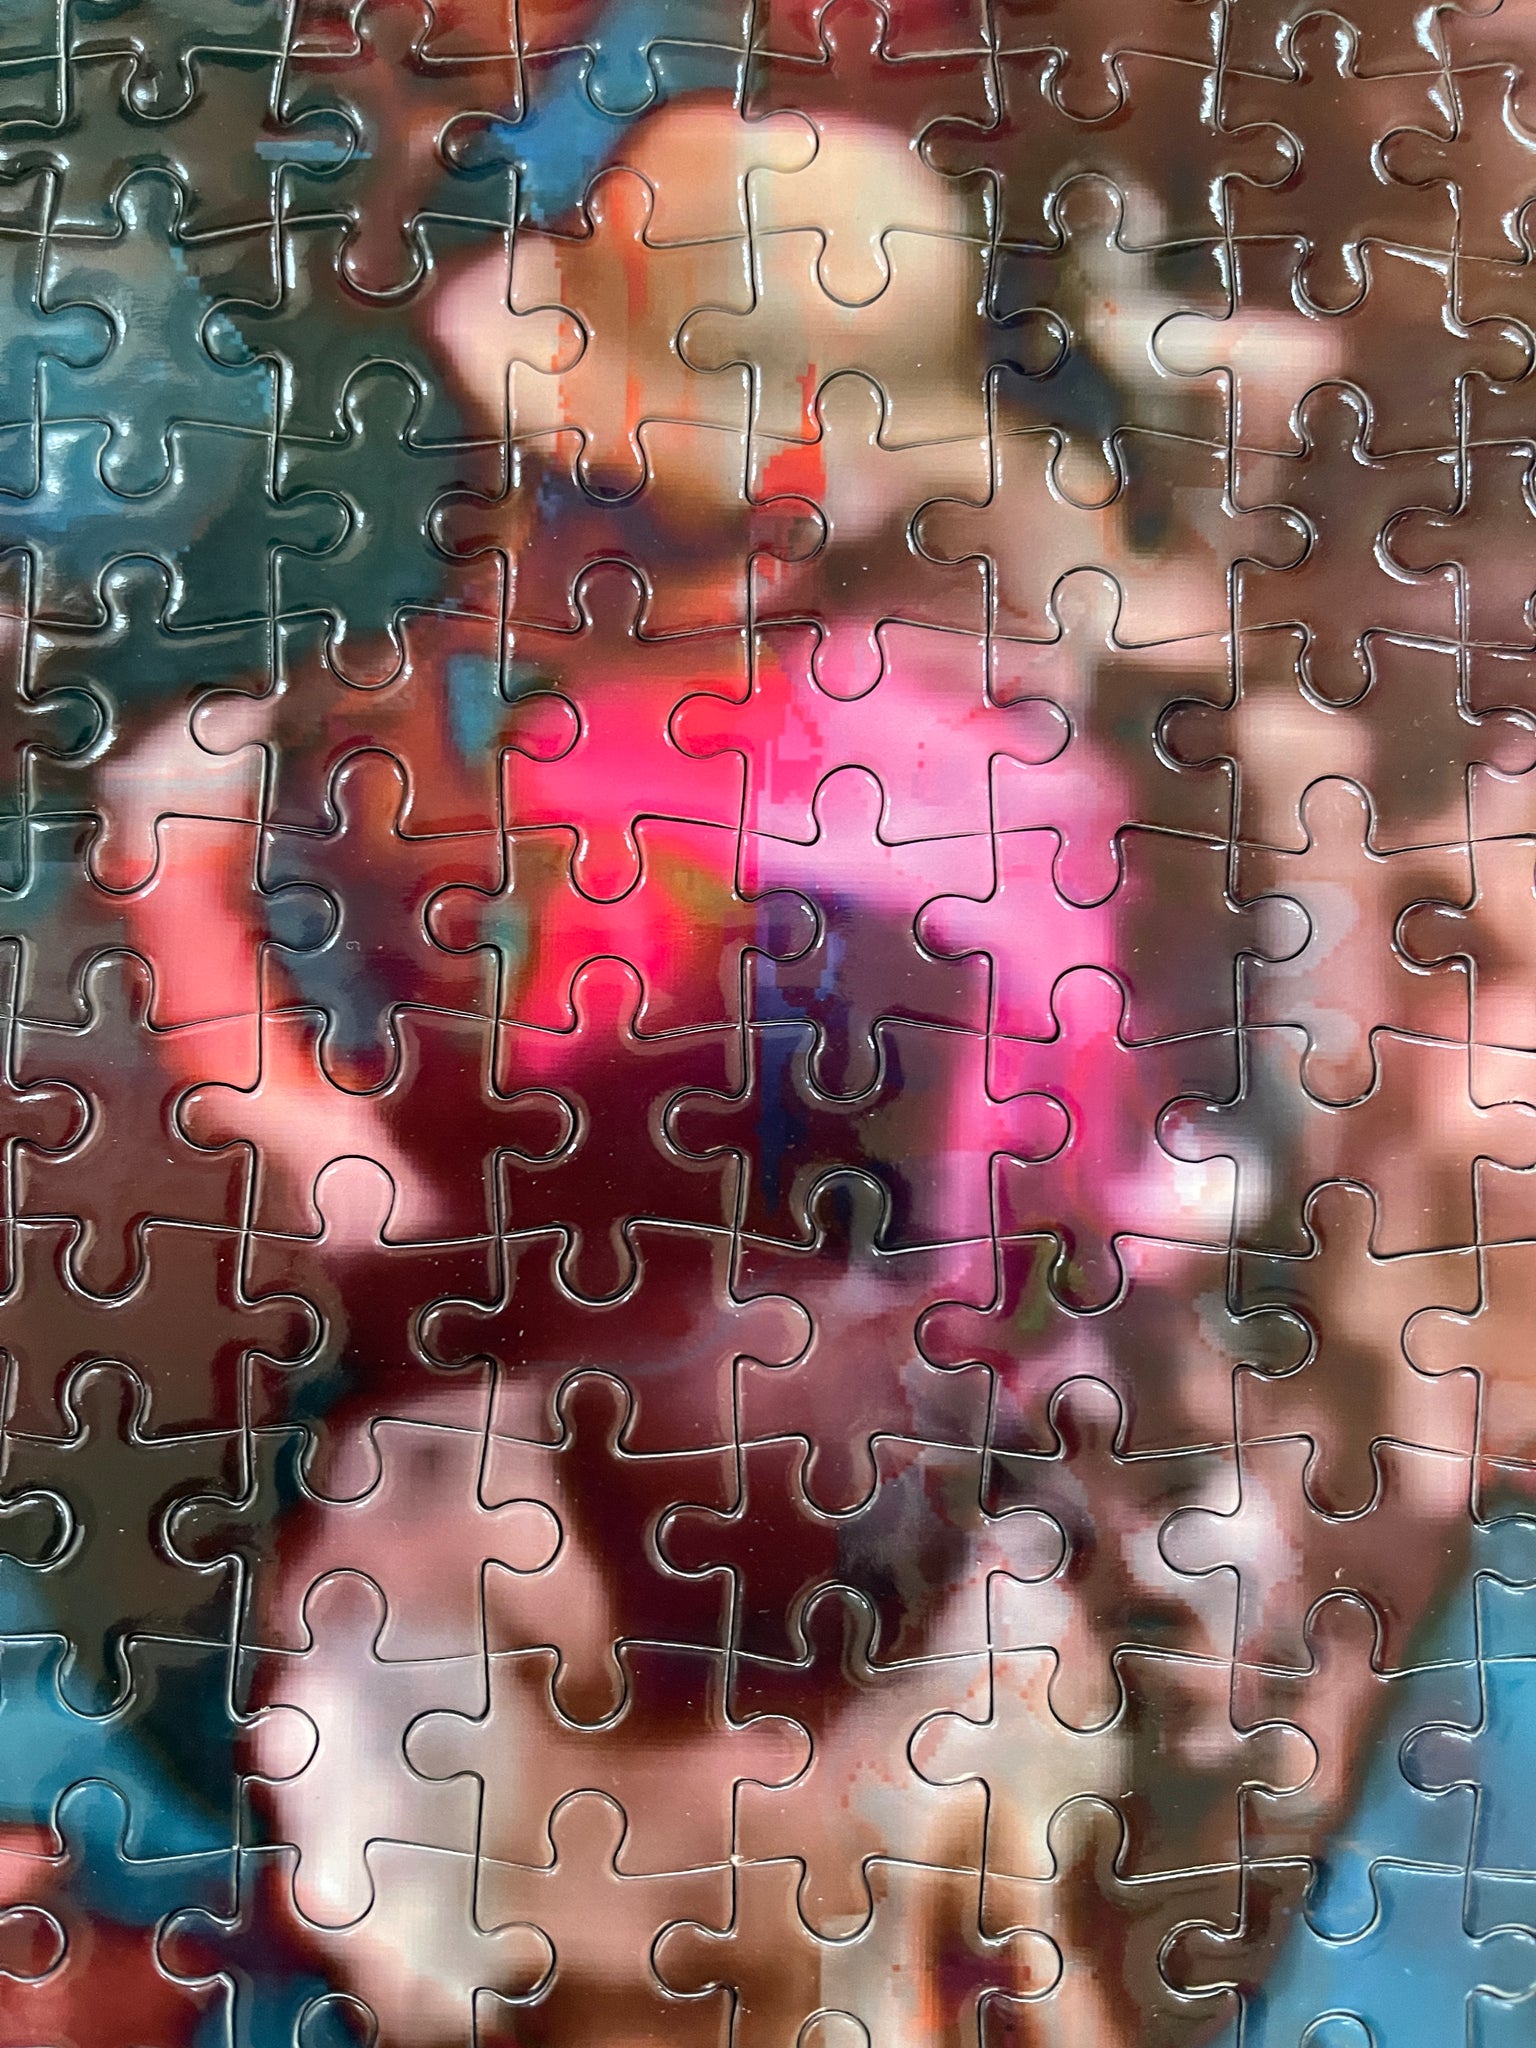 Porte Cochere Jigsaw Puzzle by Olivier Le Queinec - Pixels